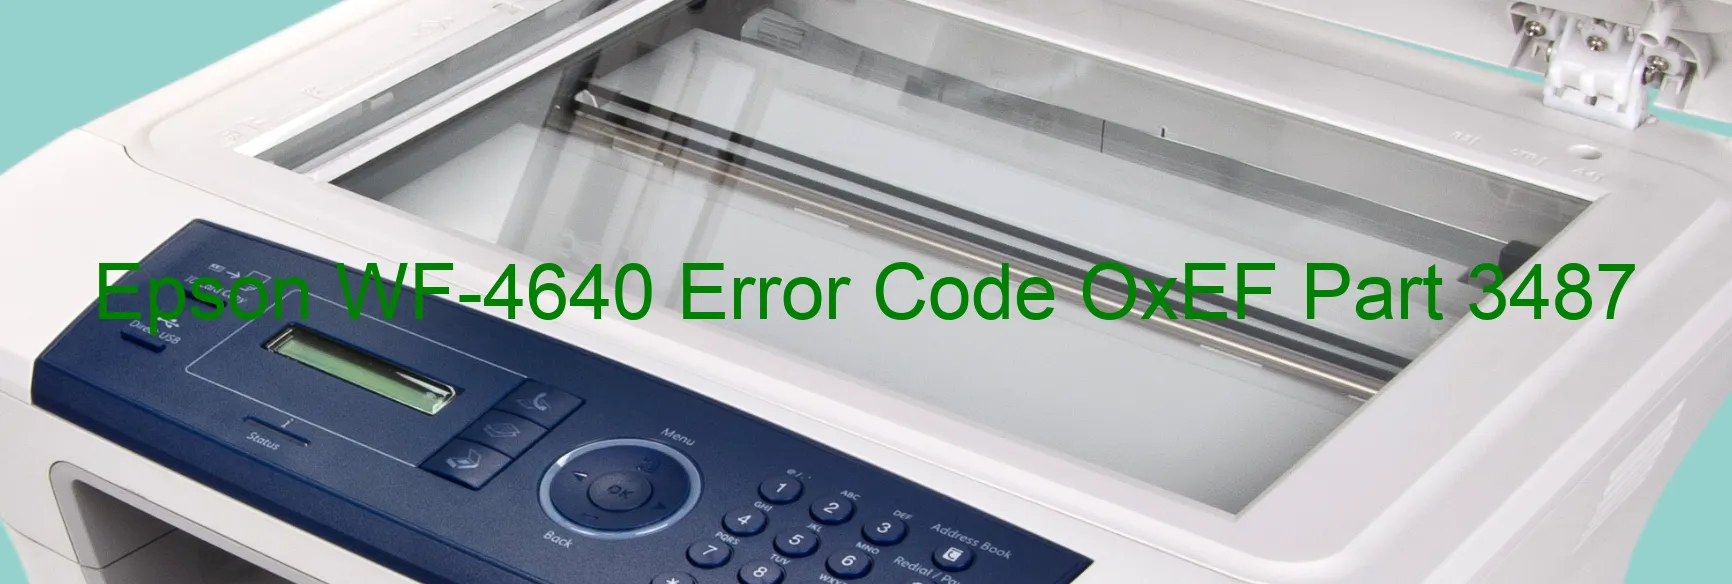 Epson WF-4640 Error Code OxEF Part 3487